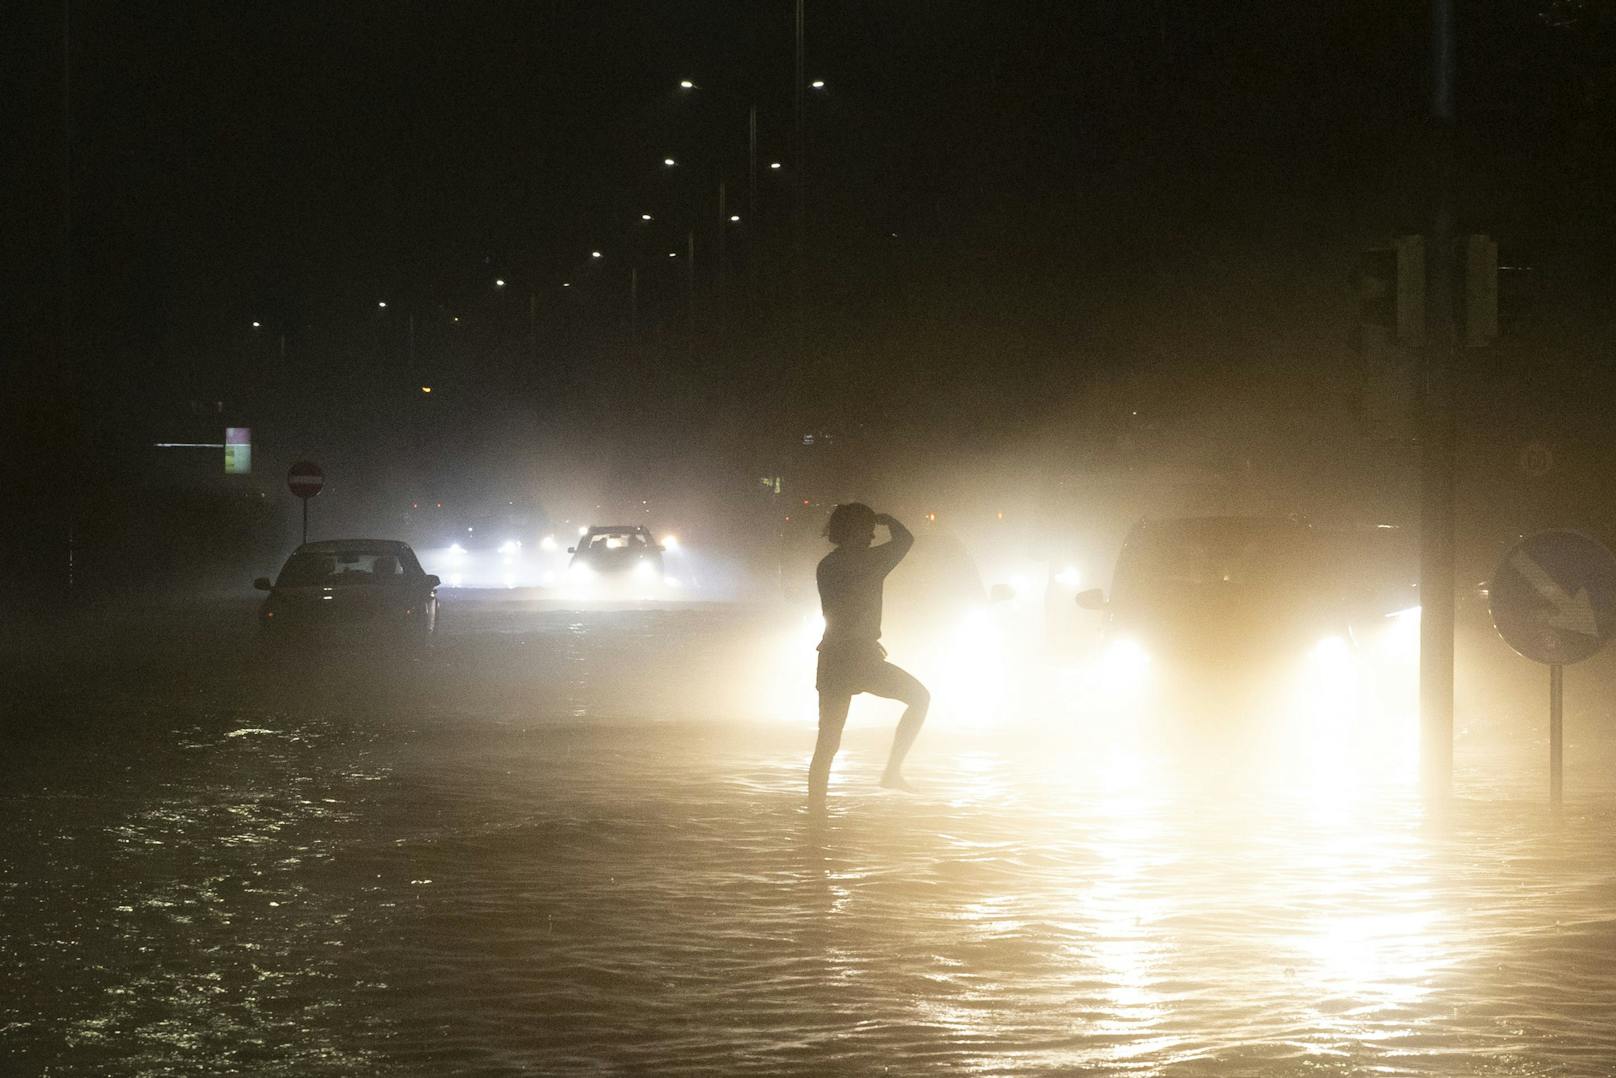 Eine Person tanzt auf einer überfluteten Kreuzung nach schweren Unwettern am Freitag, 30. Juli 2021, in Graz.